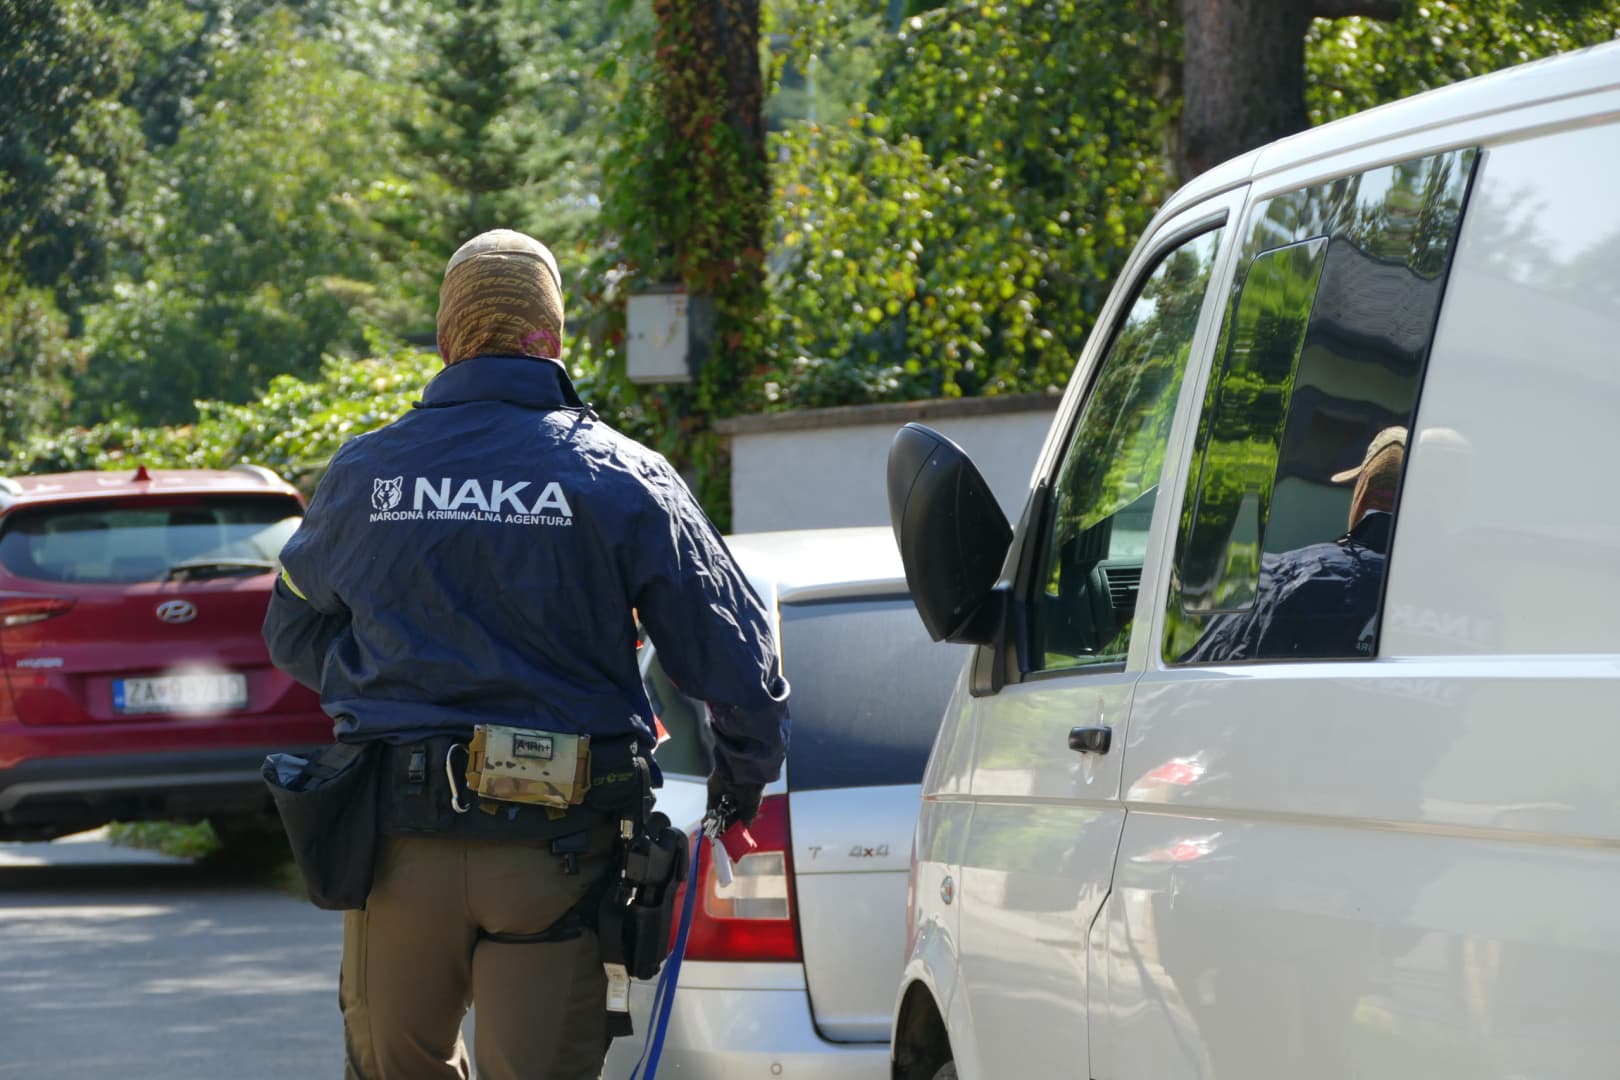 Rejtélyes NAKA-akció: Több tucatnyi rendőr valamit nagyon keresett az út melletti bokros területen